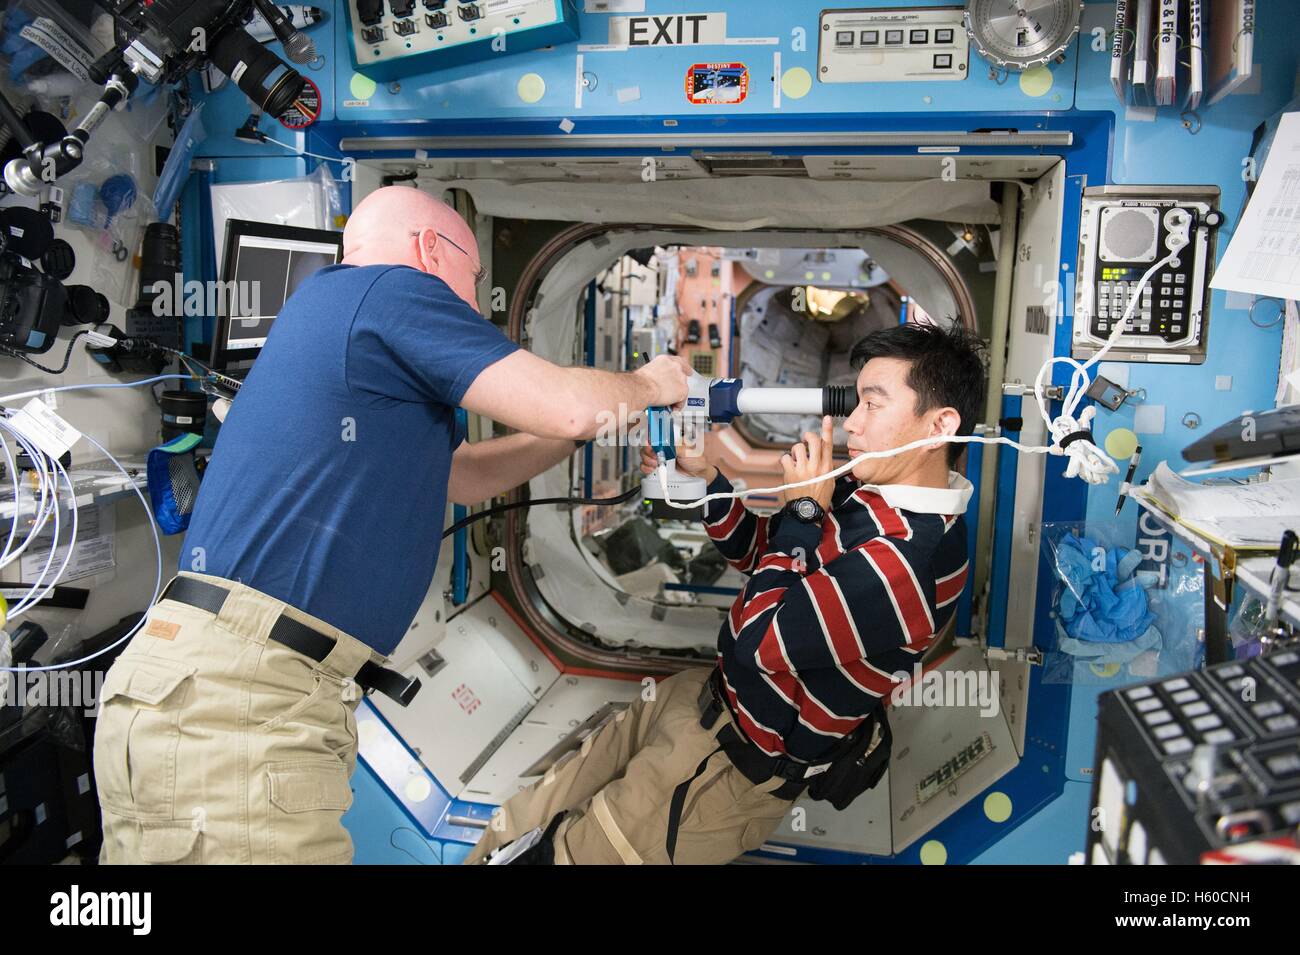 La Station spatiale internationale de la NASA de la mission Expedition 44 aide l'astronaute Scott Kelly, astronaute japonais Kimiya yui de l'Agence japonaise d'exploration aérospatiale à prendre des images de la rétine pour une étude sur la santé oculaire 5 août 2015 alors que dans l'orbite de la Terre. Banque D'Images